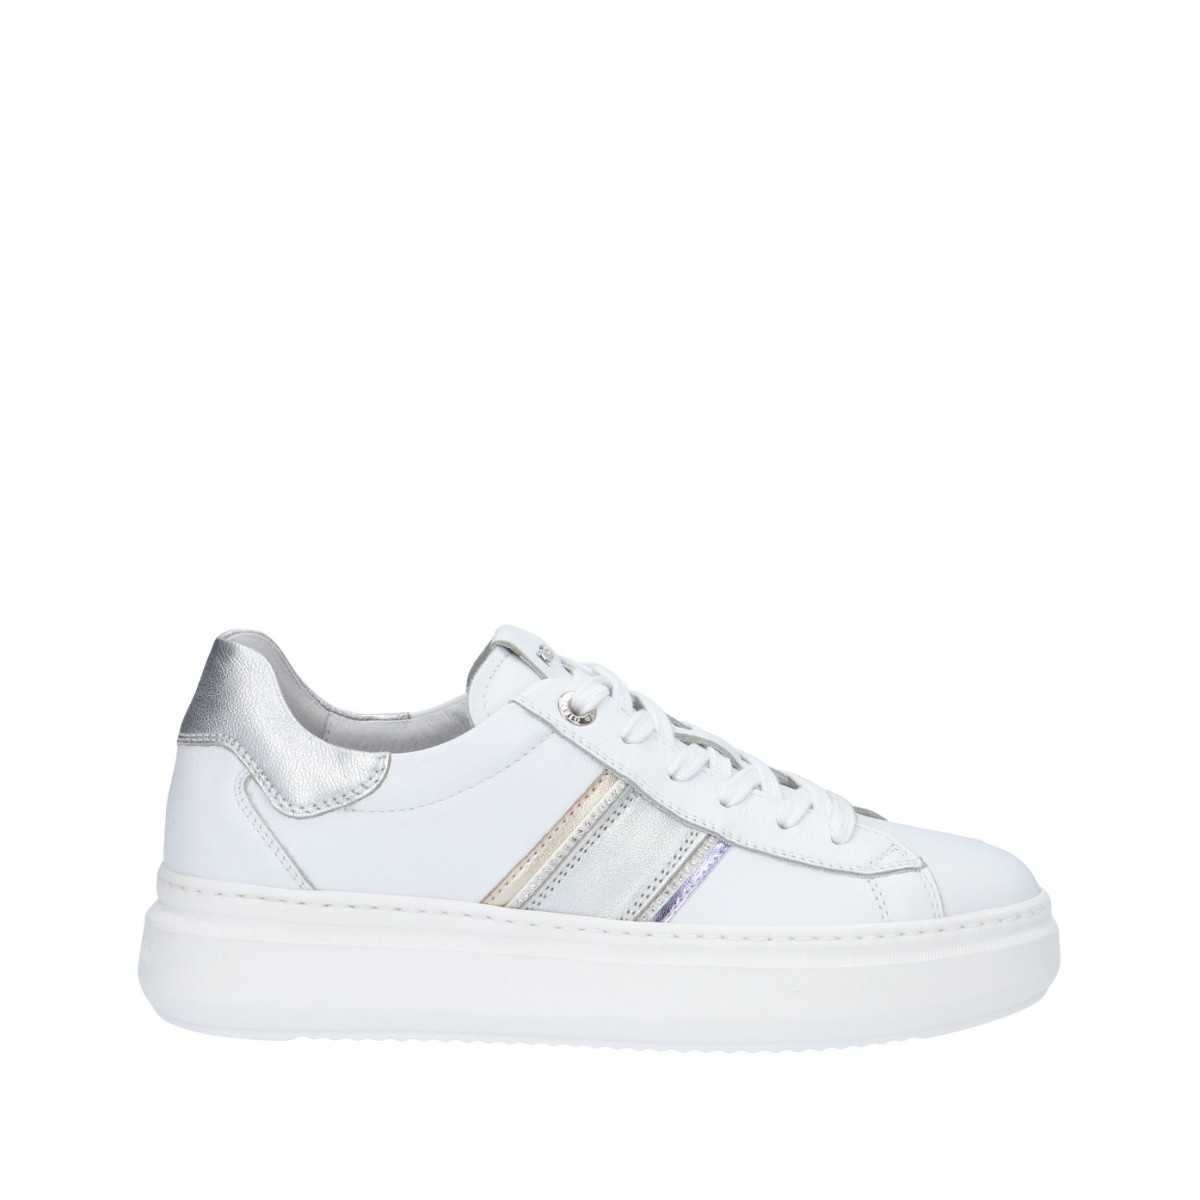 Nerogiardini Sneaker Bianco/argento Gomma E306554D